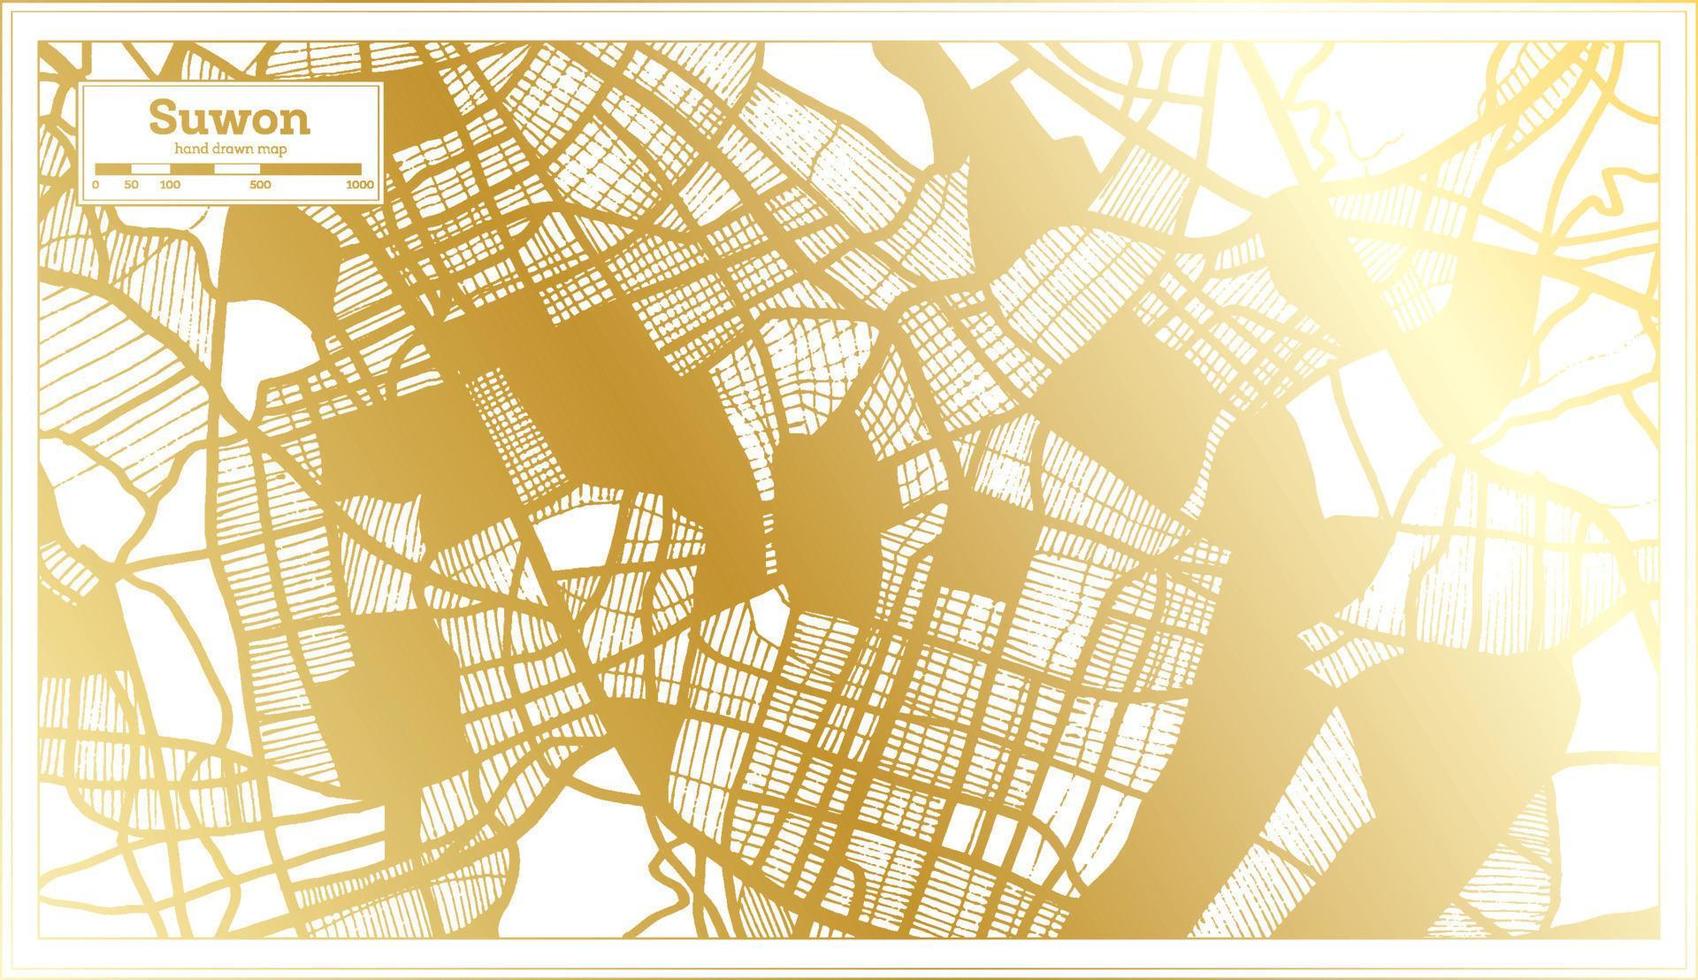 plan de la ville de suwon en corée du sud dans un style rétro de couleur dorée. carte muette. vecteur